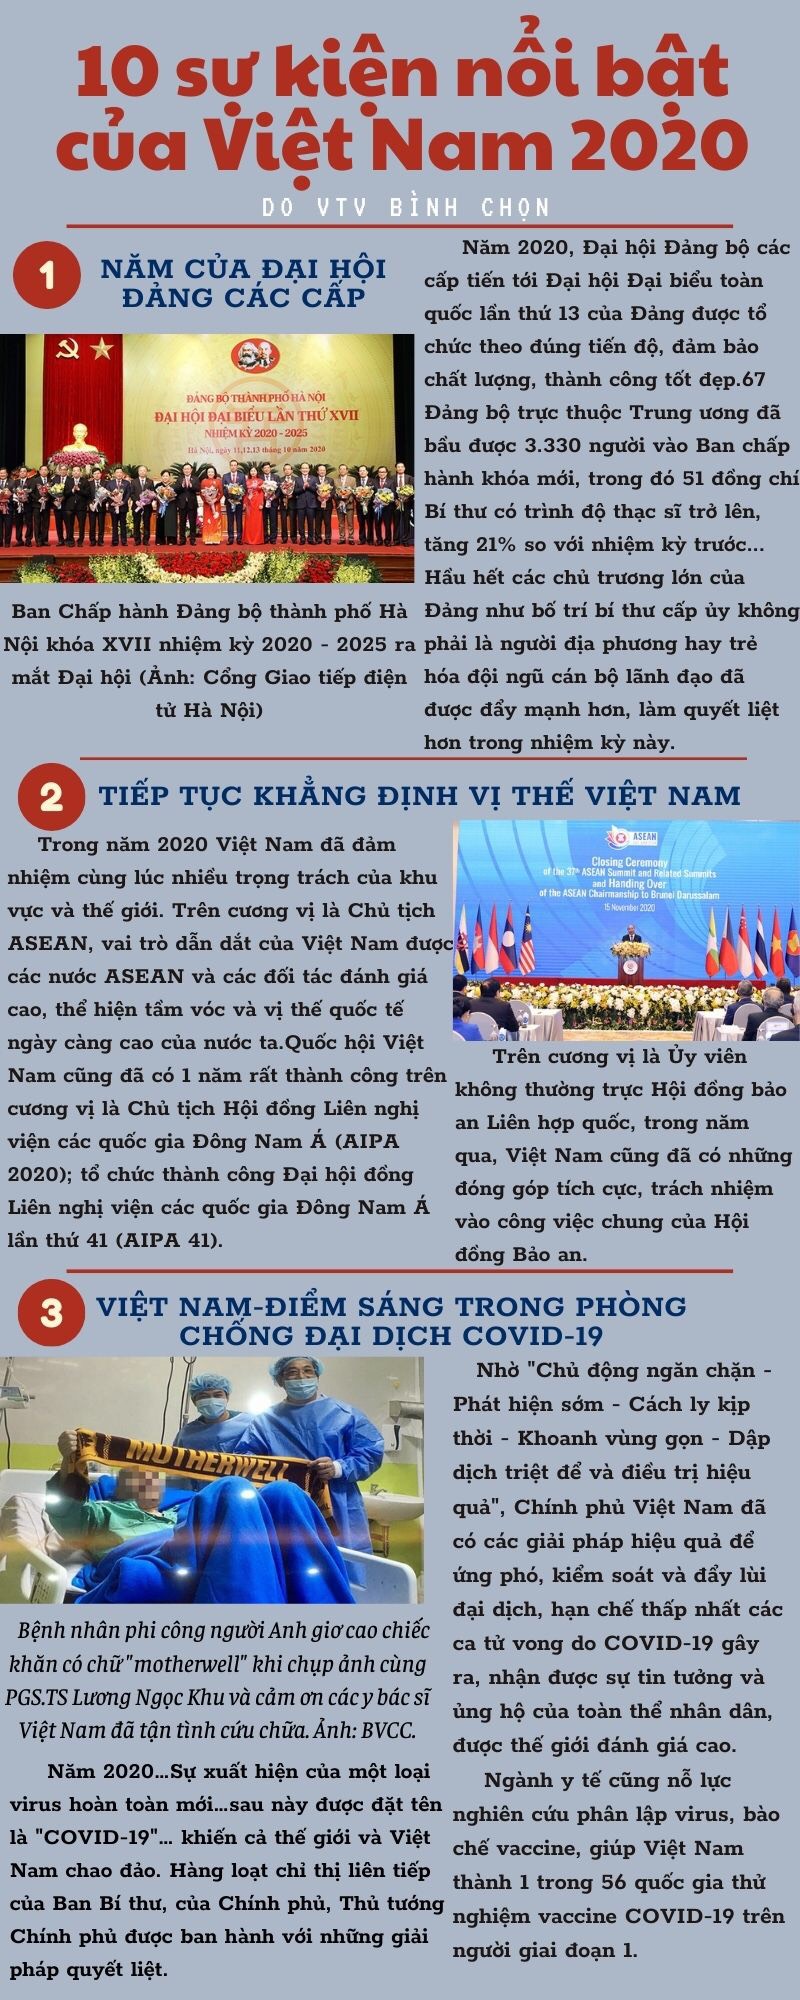 10 sự kiện nổi bật của Việt Nam năm 2020 do VTV bình chọn -0